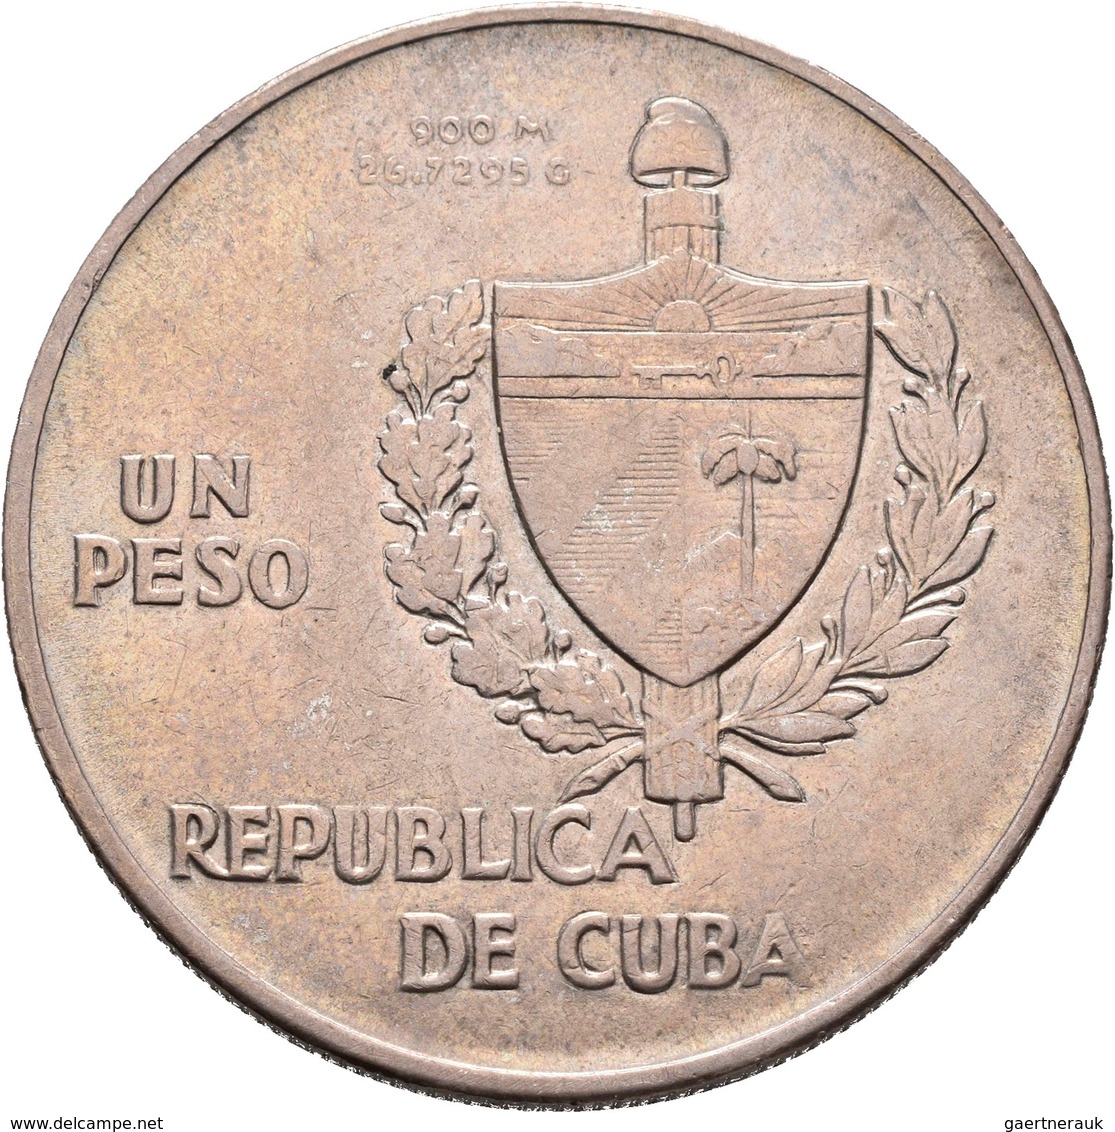 Kuba: Lot 4 Stück; Peso 1915, 1934, 1934, 1953, sehr schön-vorzüglich, vorzüglich, Stempelglanz.